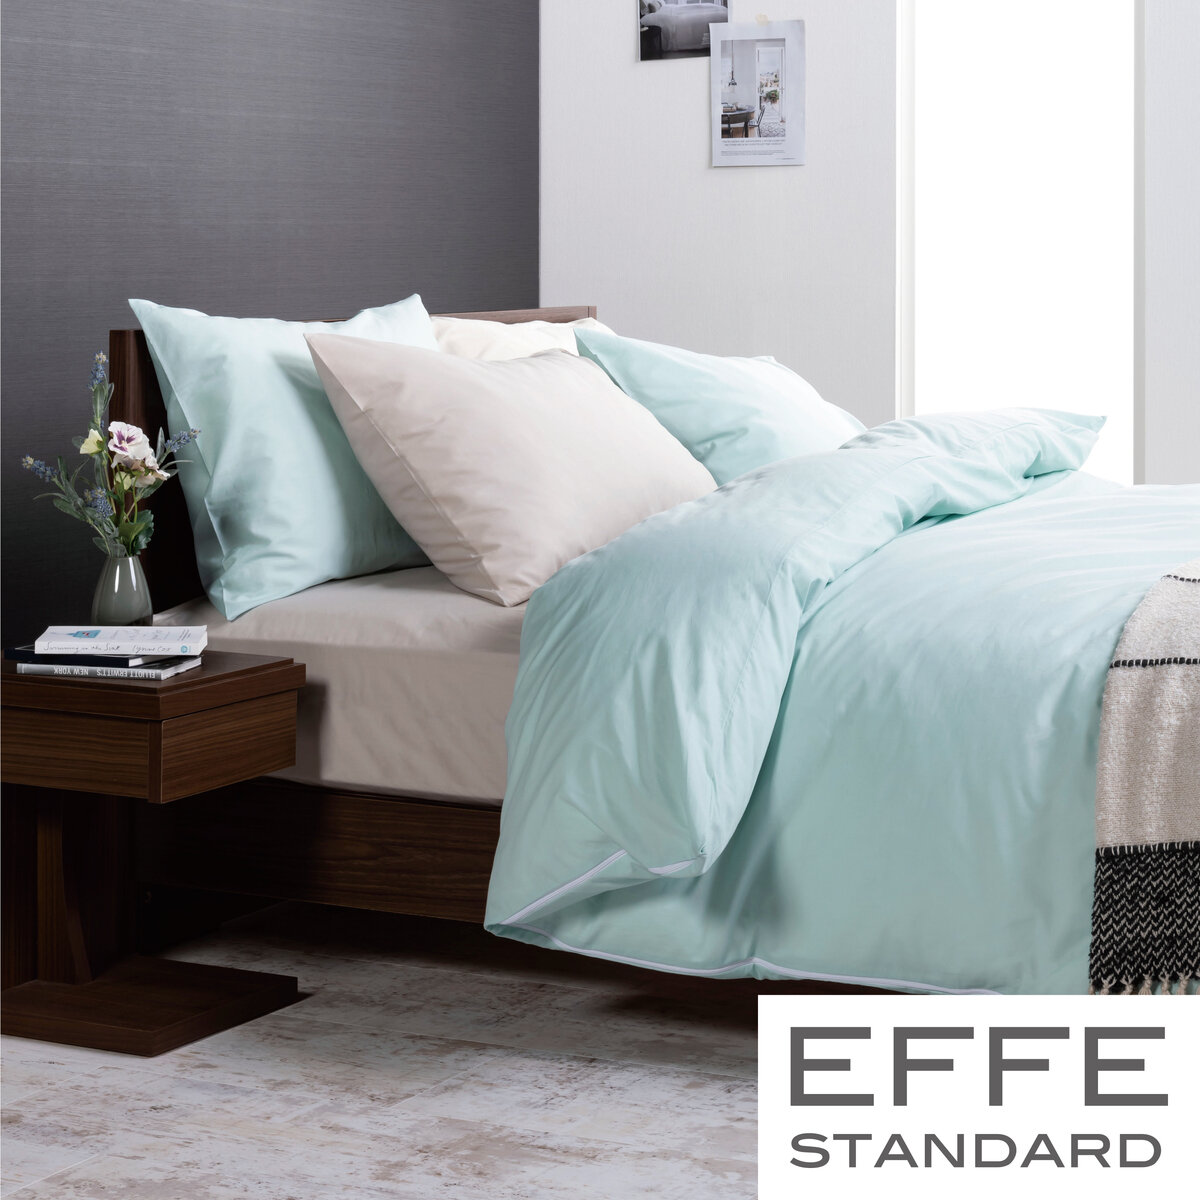 フランスベッド 寝装品 3点セット エッフェスタンダード クイーン ブルー